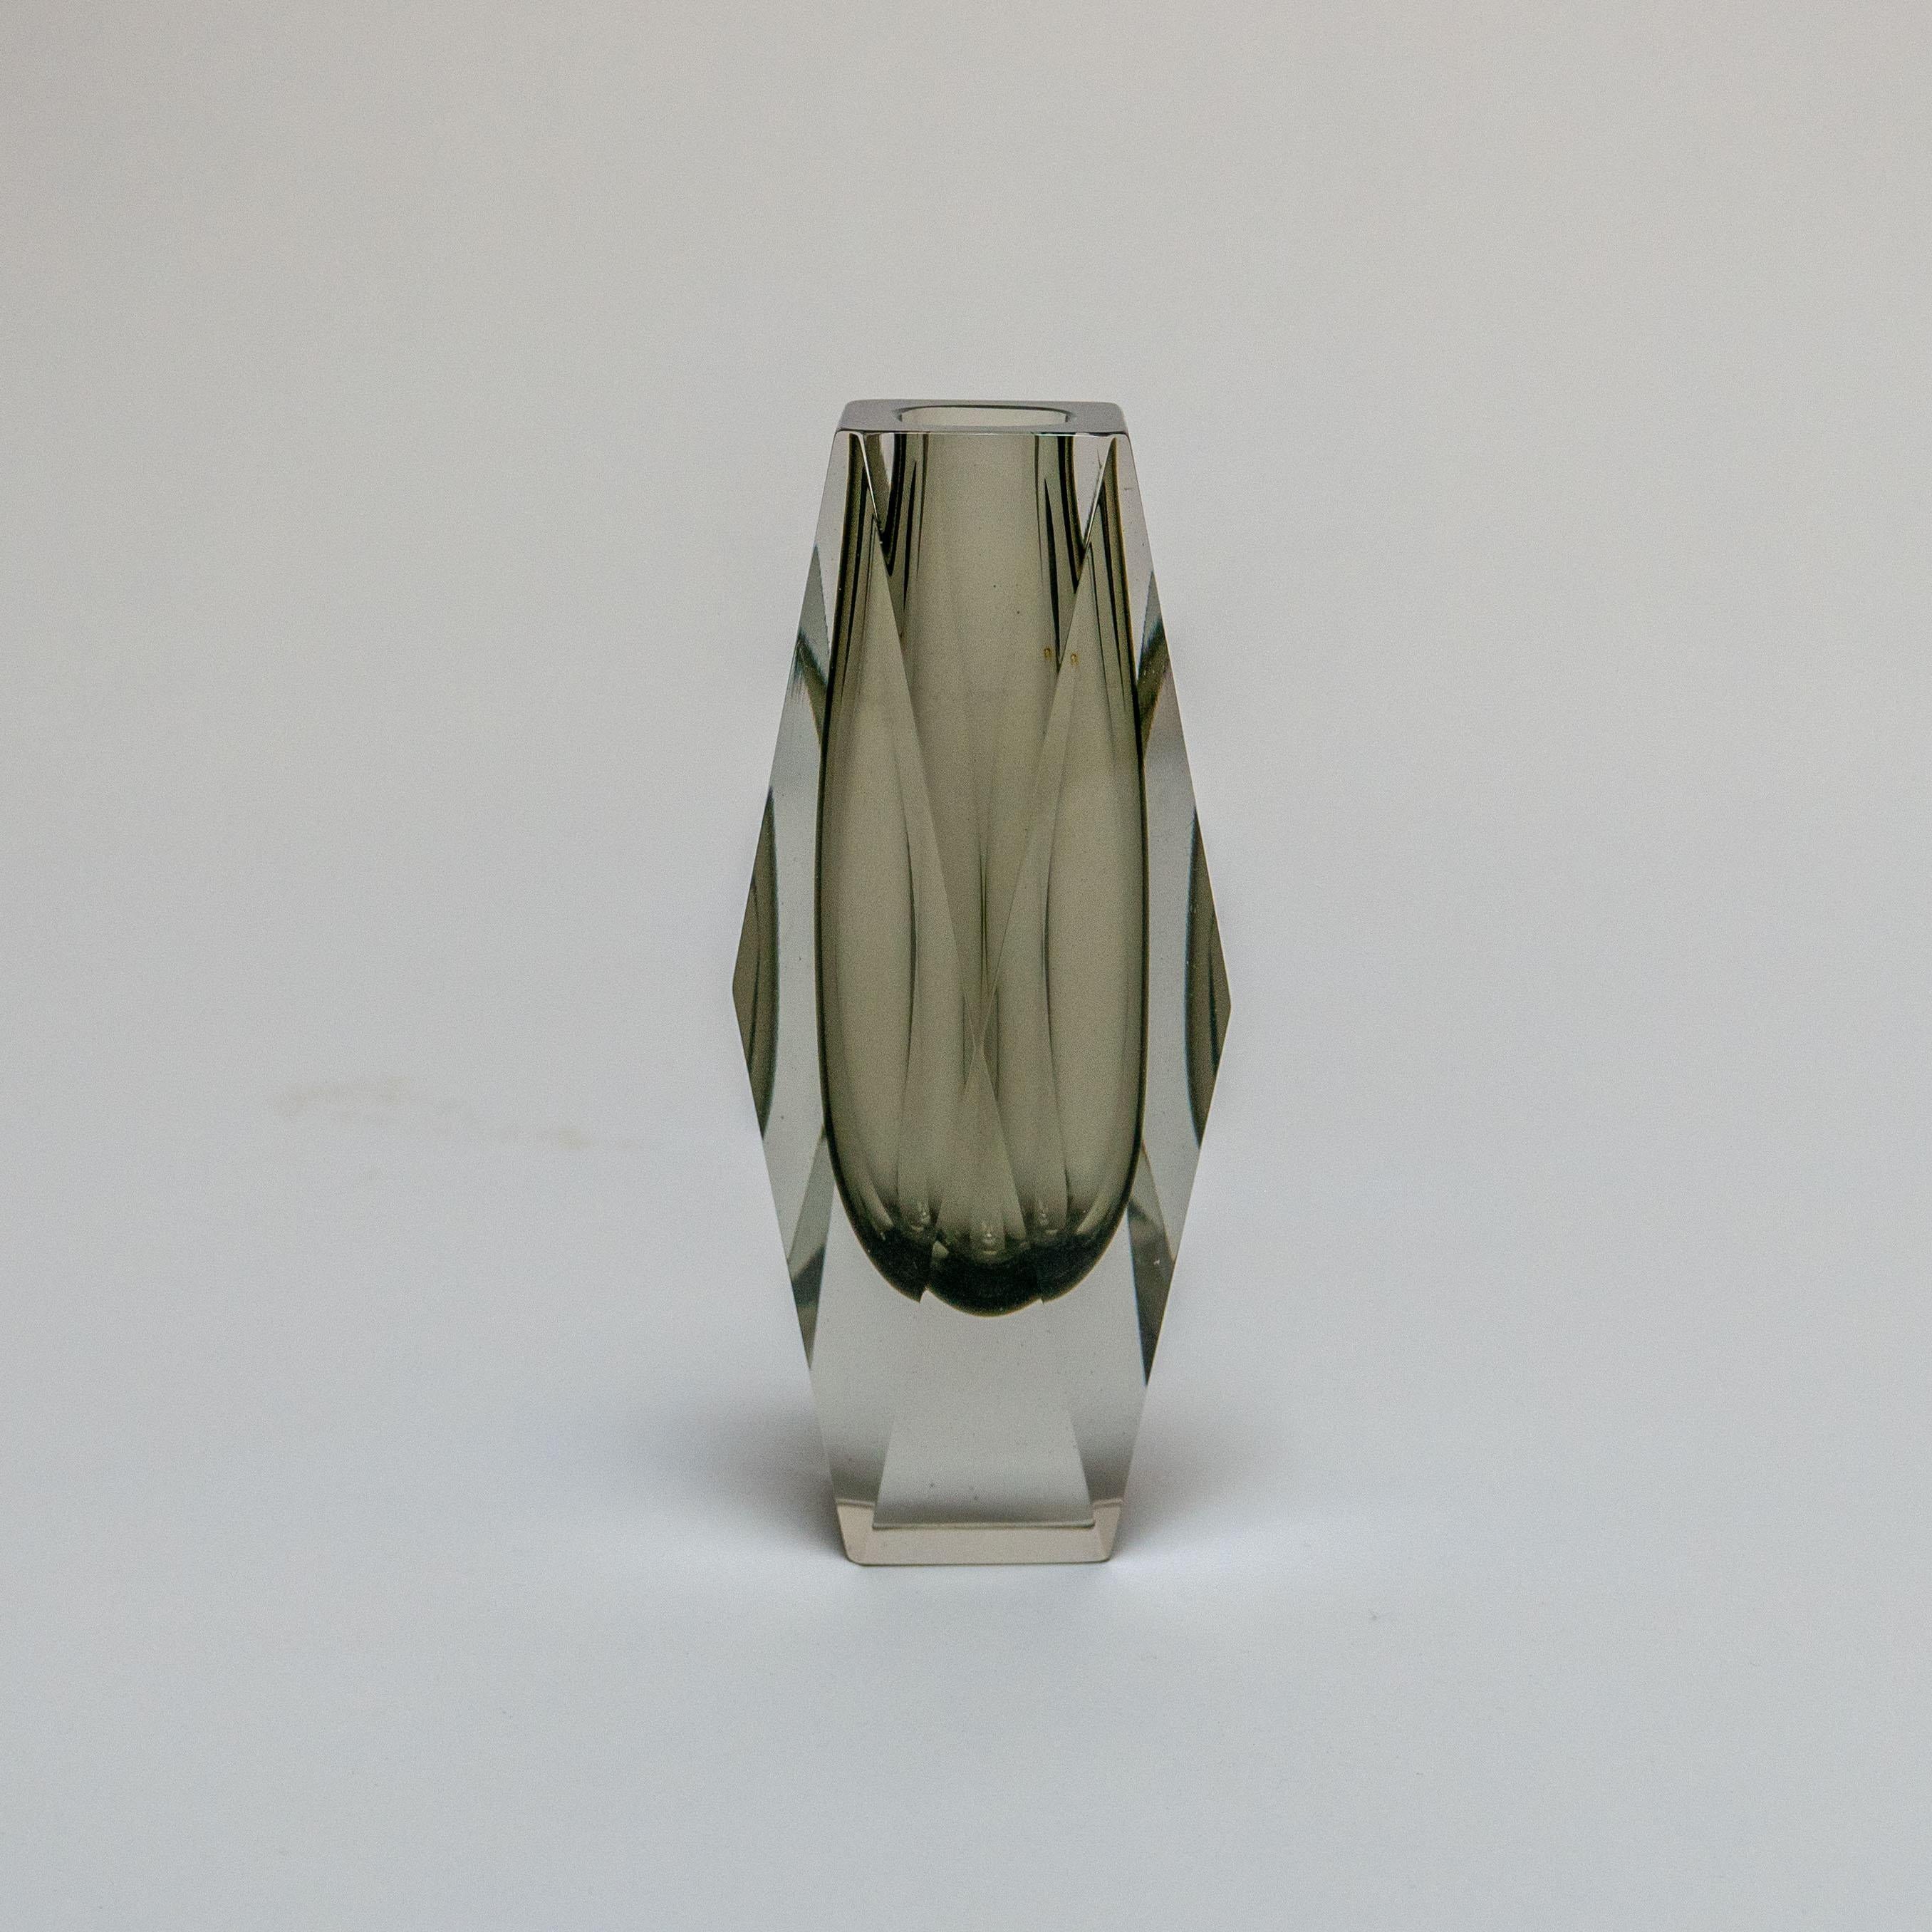 Universellement considéré comme l'un des créateurs les plus prolifiques et les plus compétents de vases et d'objets en verre de Murano, Flavio Poli s'est associé à certains des producteurs de verre les plus influents et les plus compétents de Murano